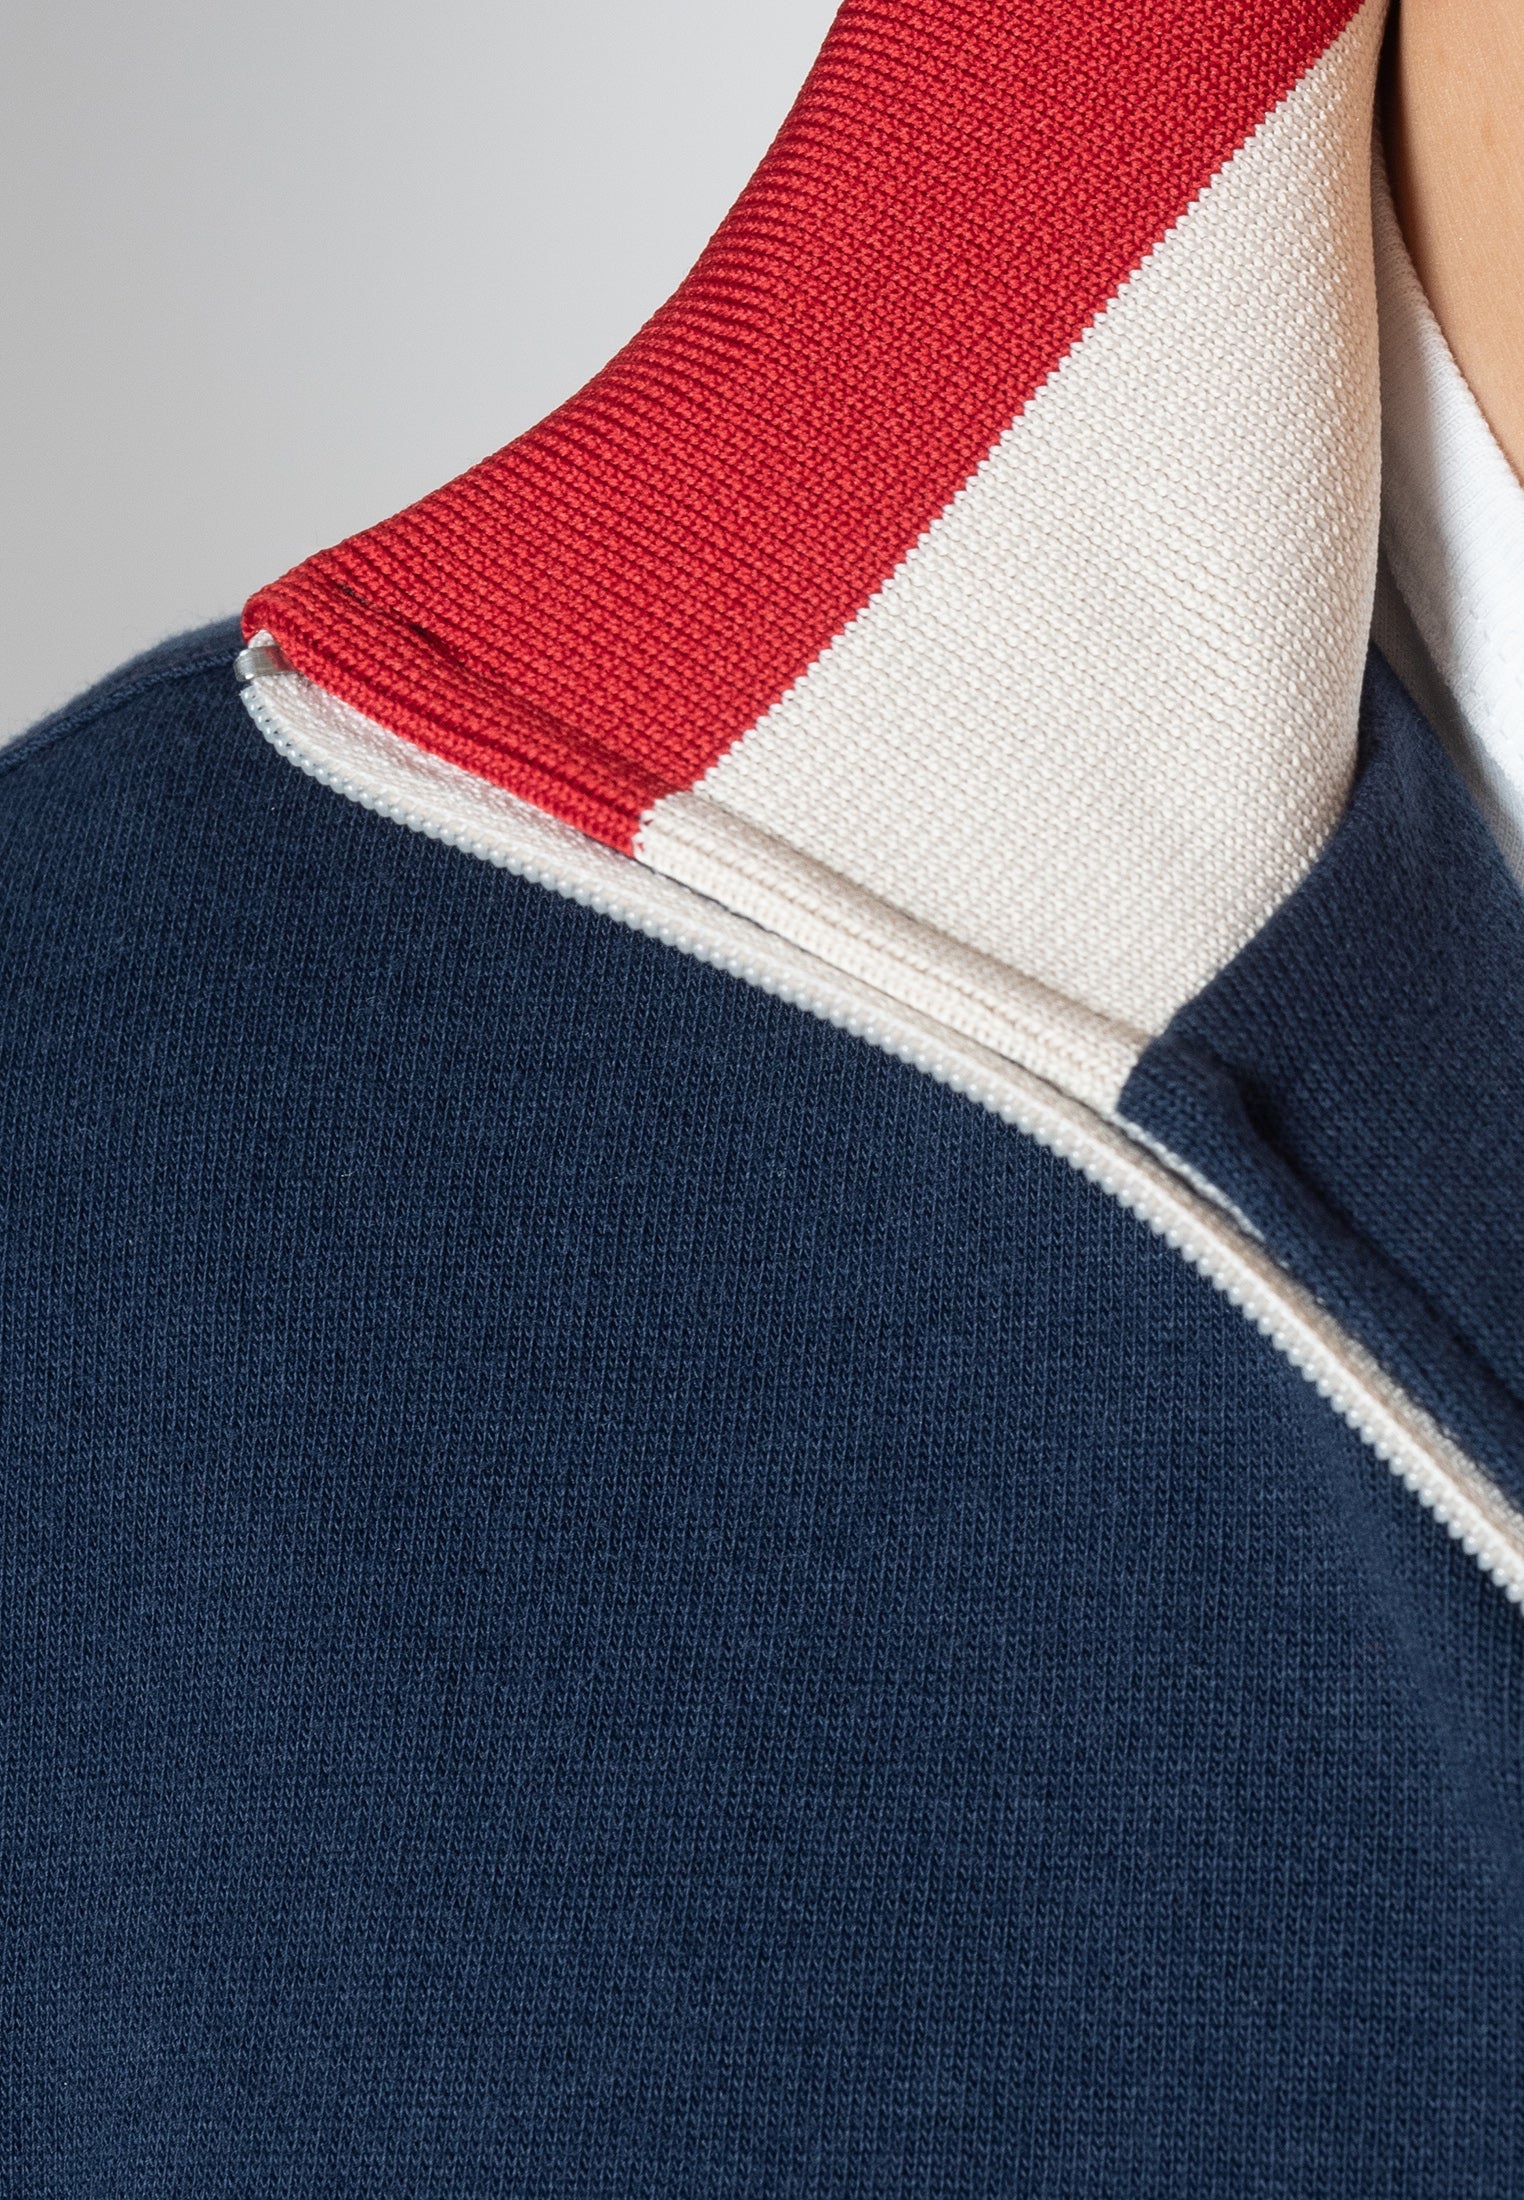 Мужская олдскульная олимпийка Truman, navy (синий), бренда Merc, купить на официальном сайте 